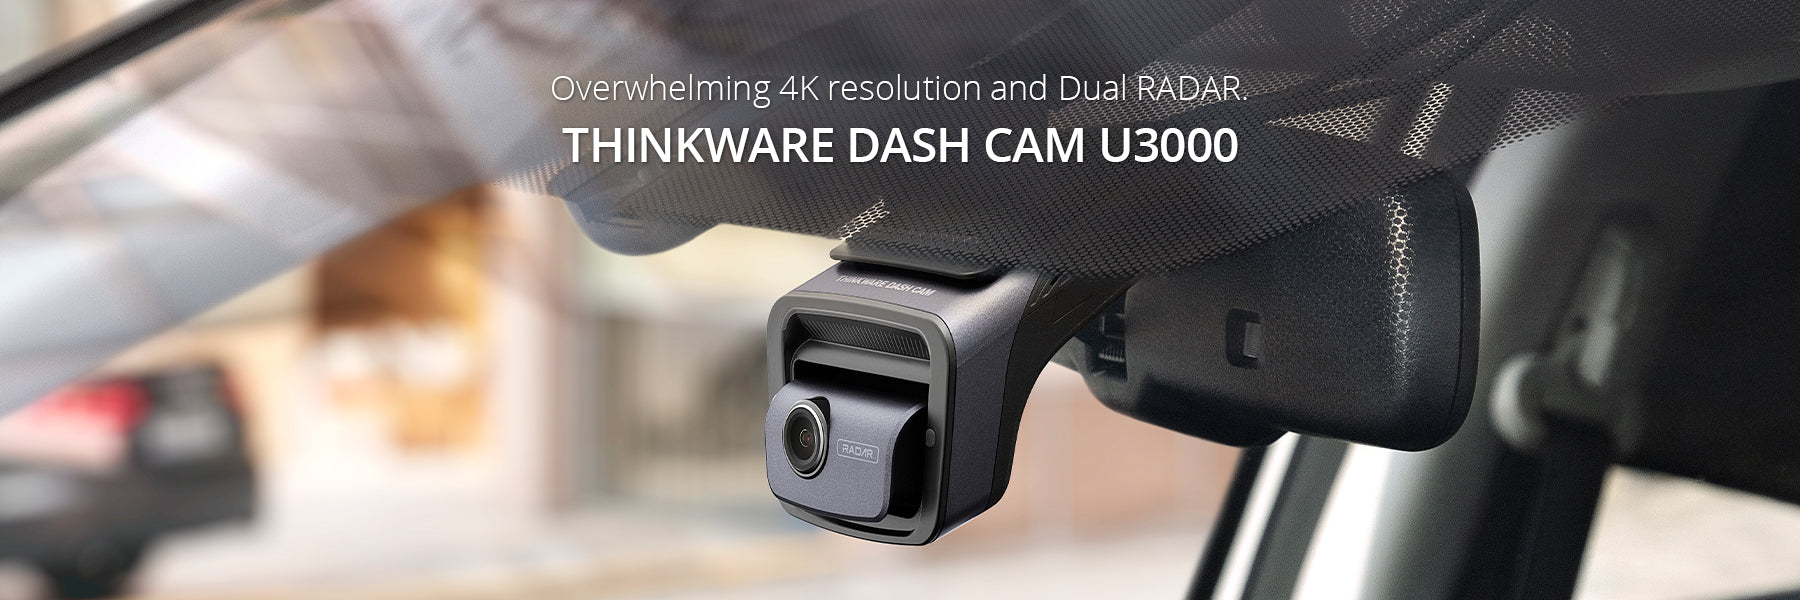 U3000 Dash Cam - Thinkware Store